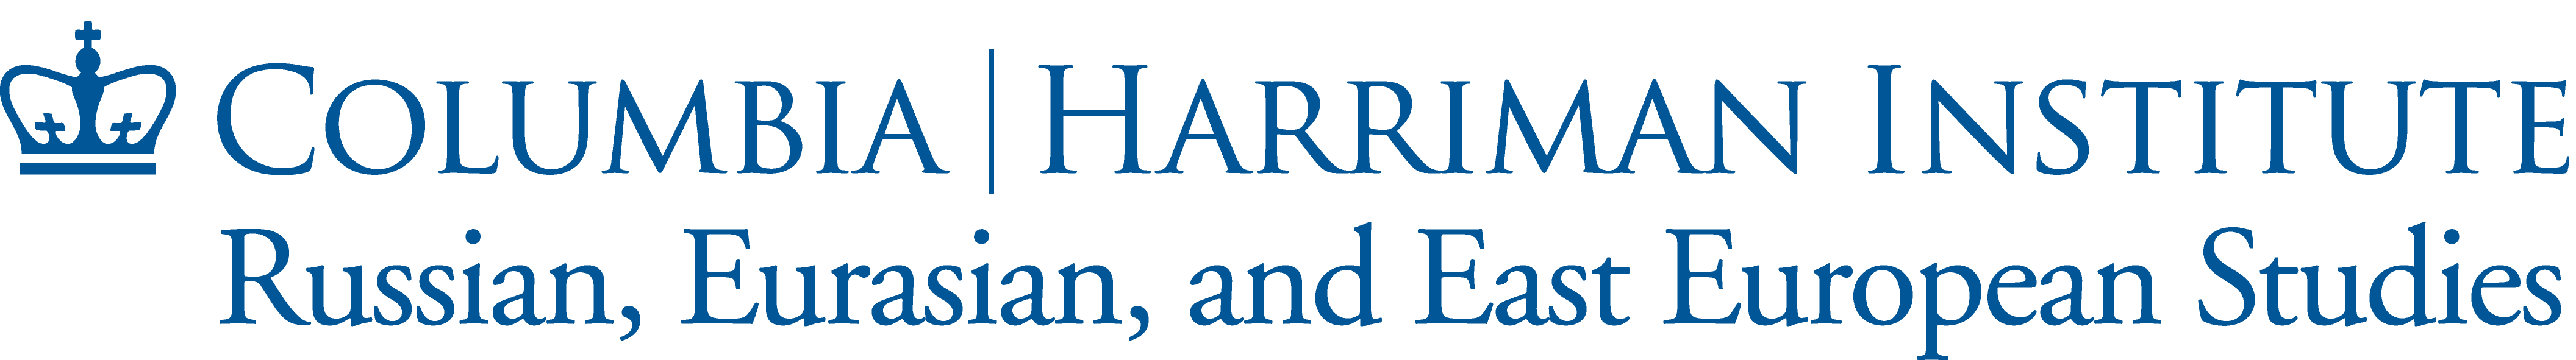 Harriman Institute at Columbia University Logo